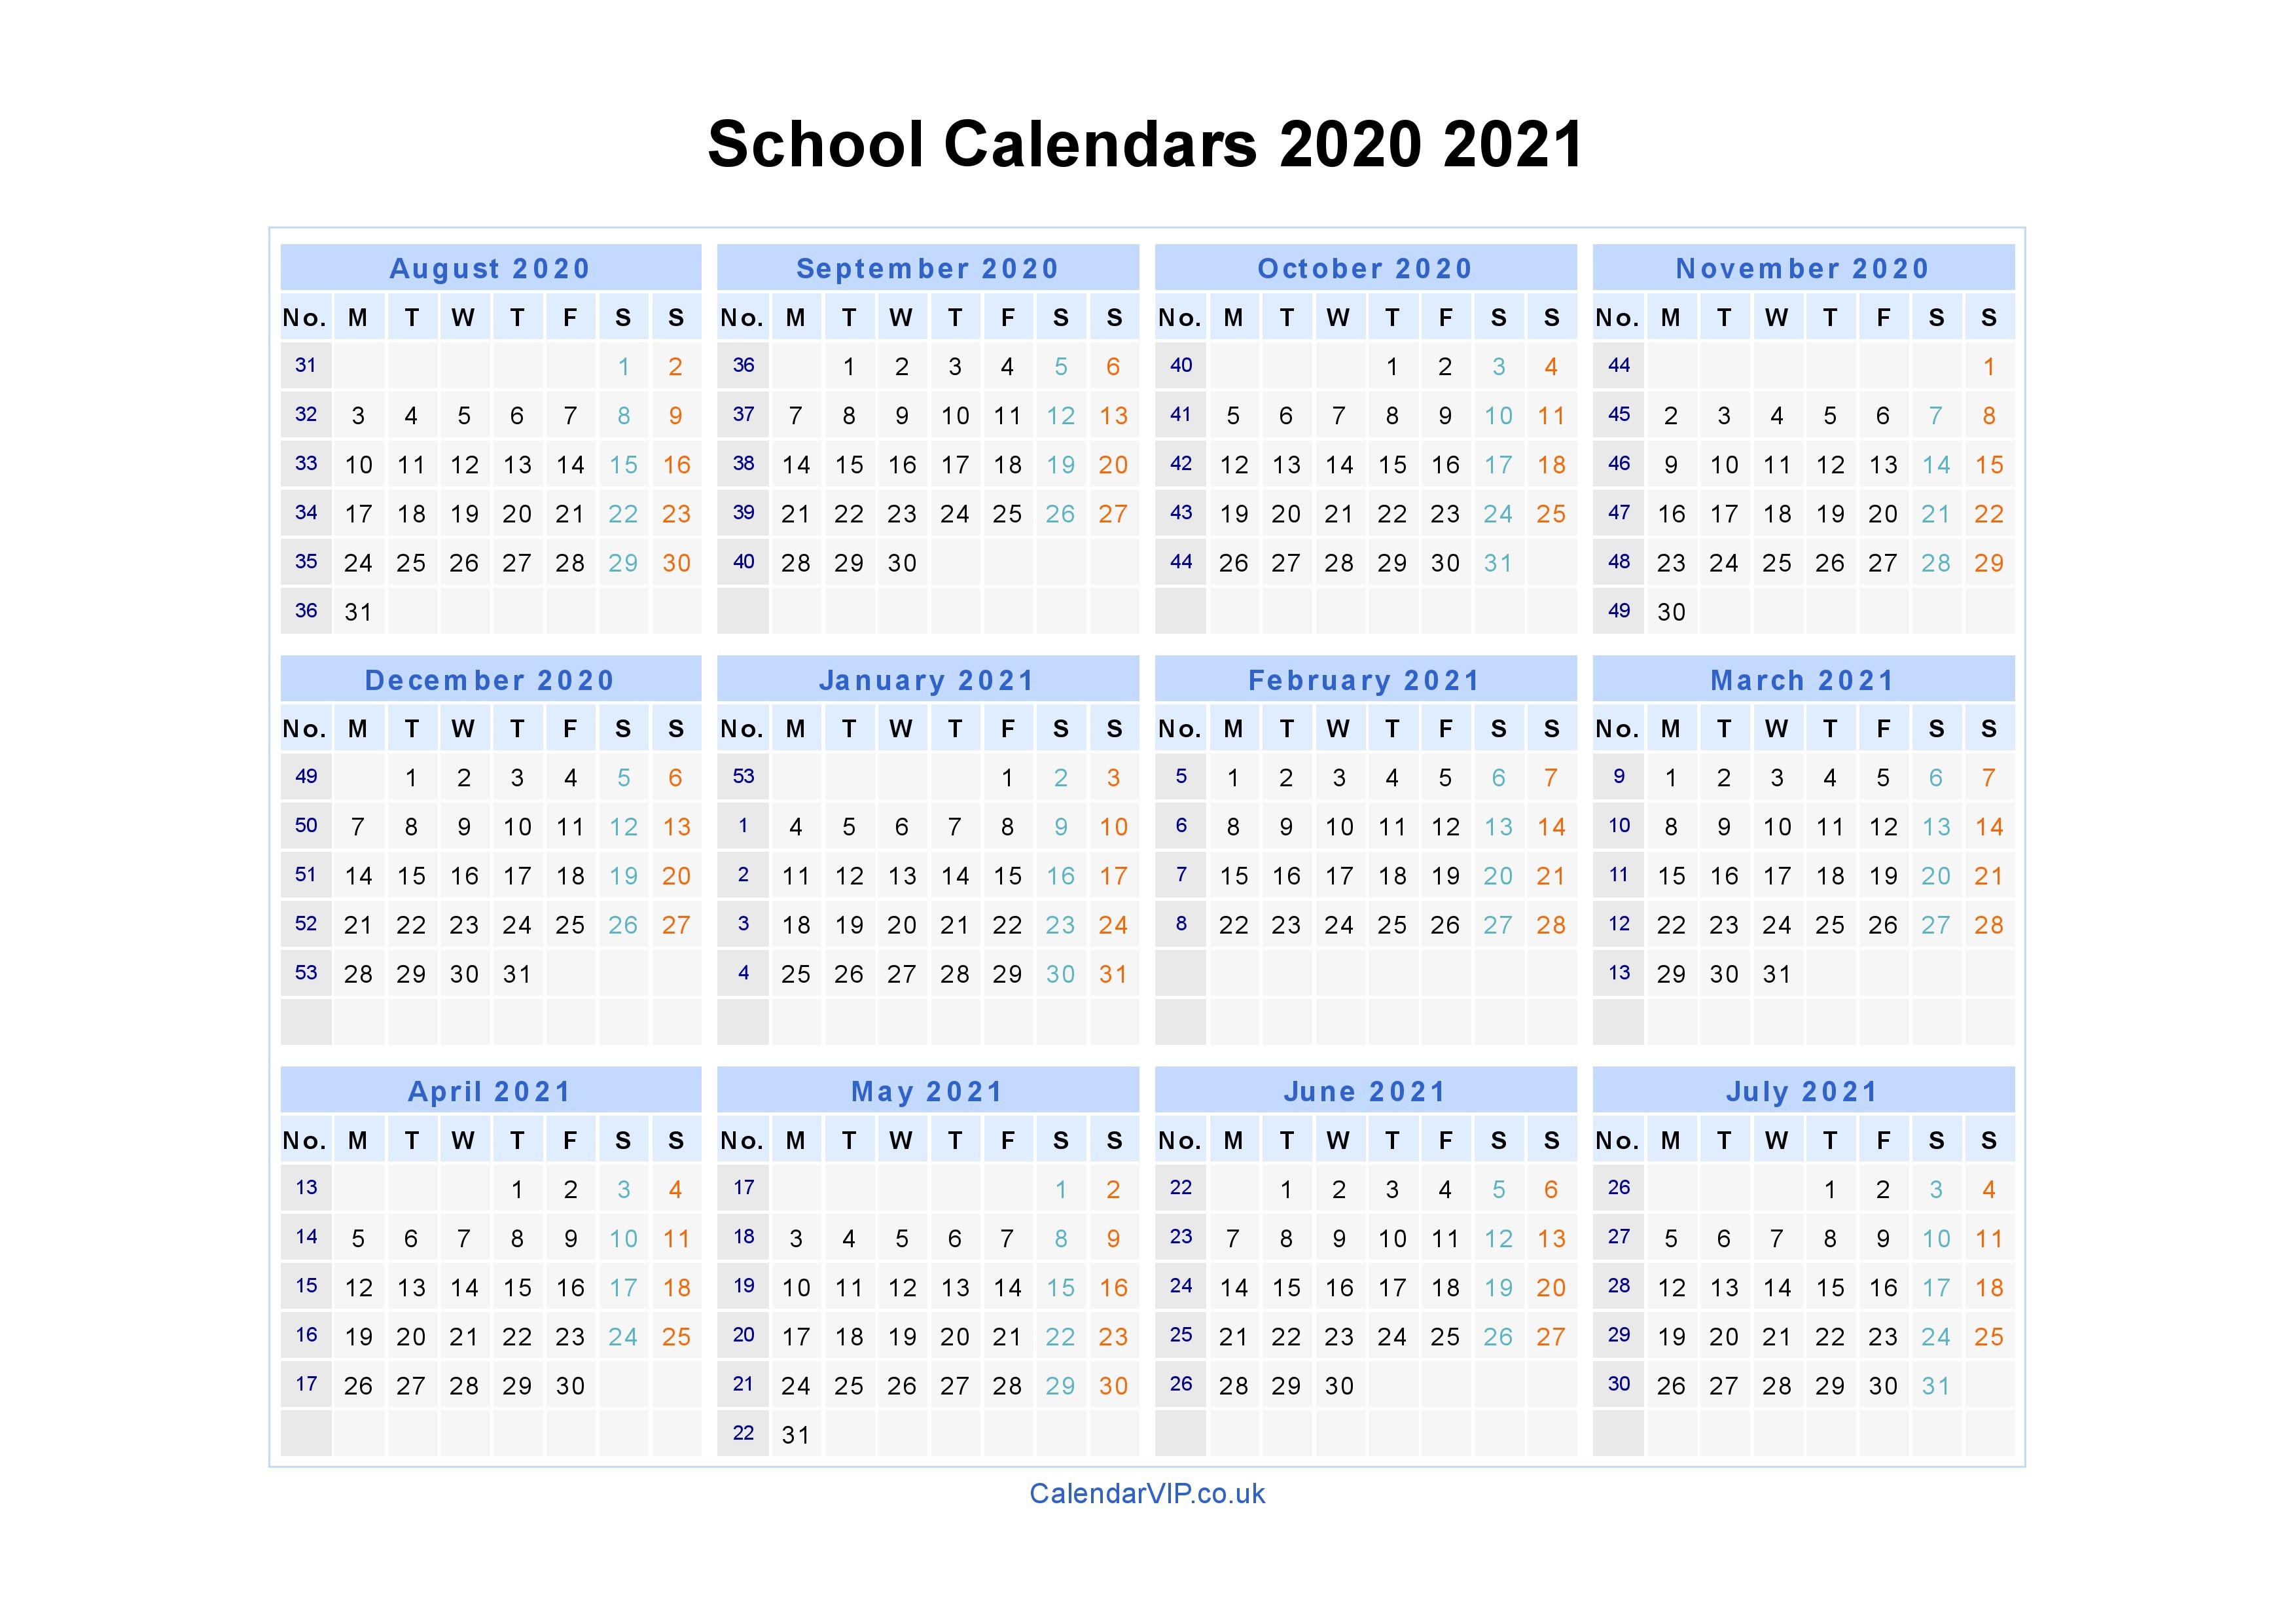 School Calendars 2020 2021 Calendar from August 2020 to